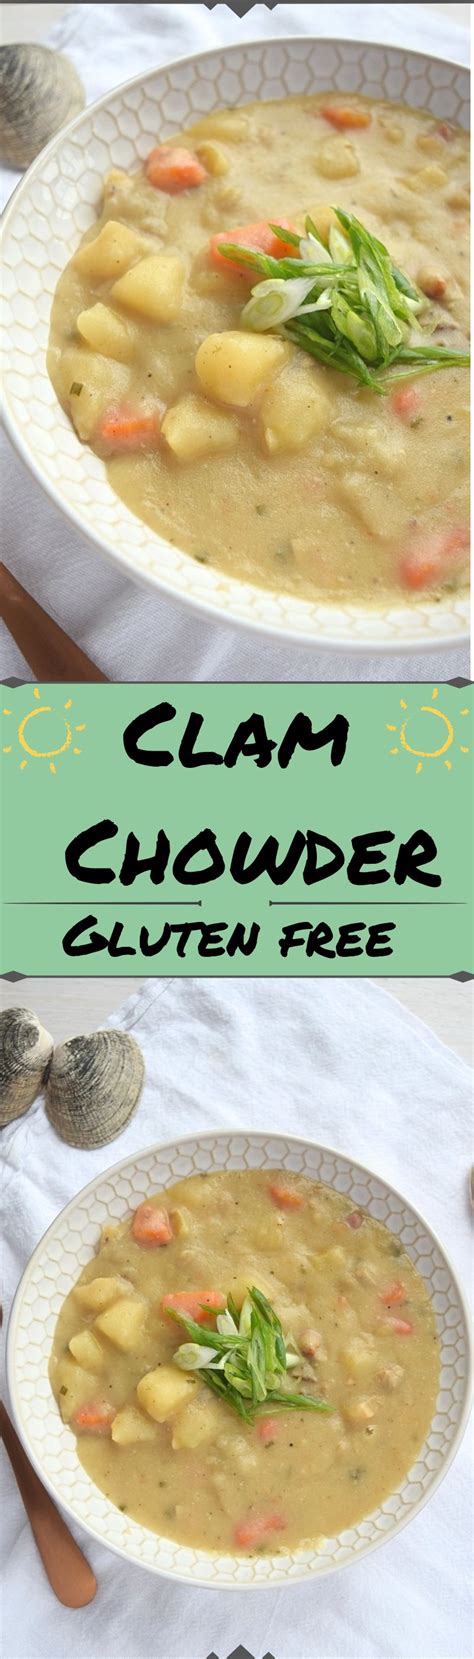 Clam Chowder A Stray Kitchen Recipe Delicious Gluten Free Recipes